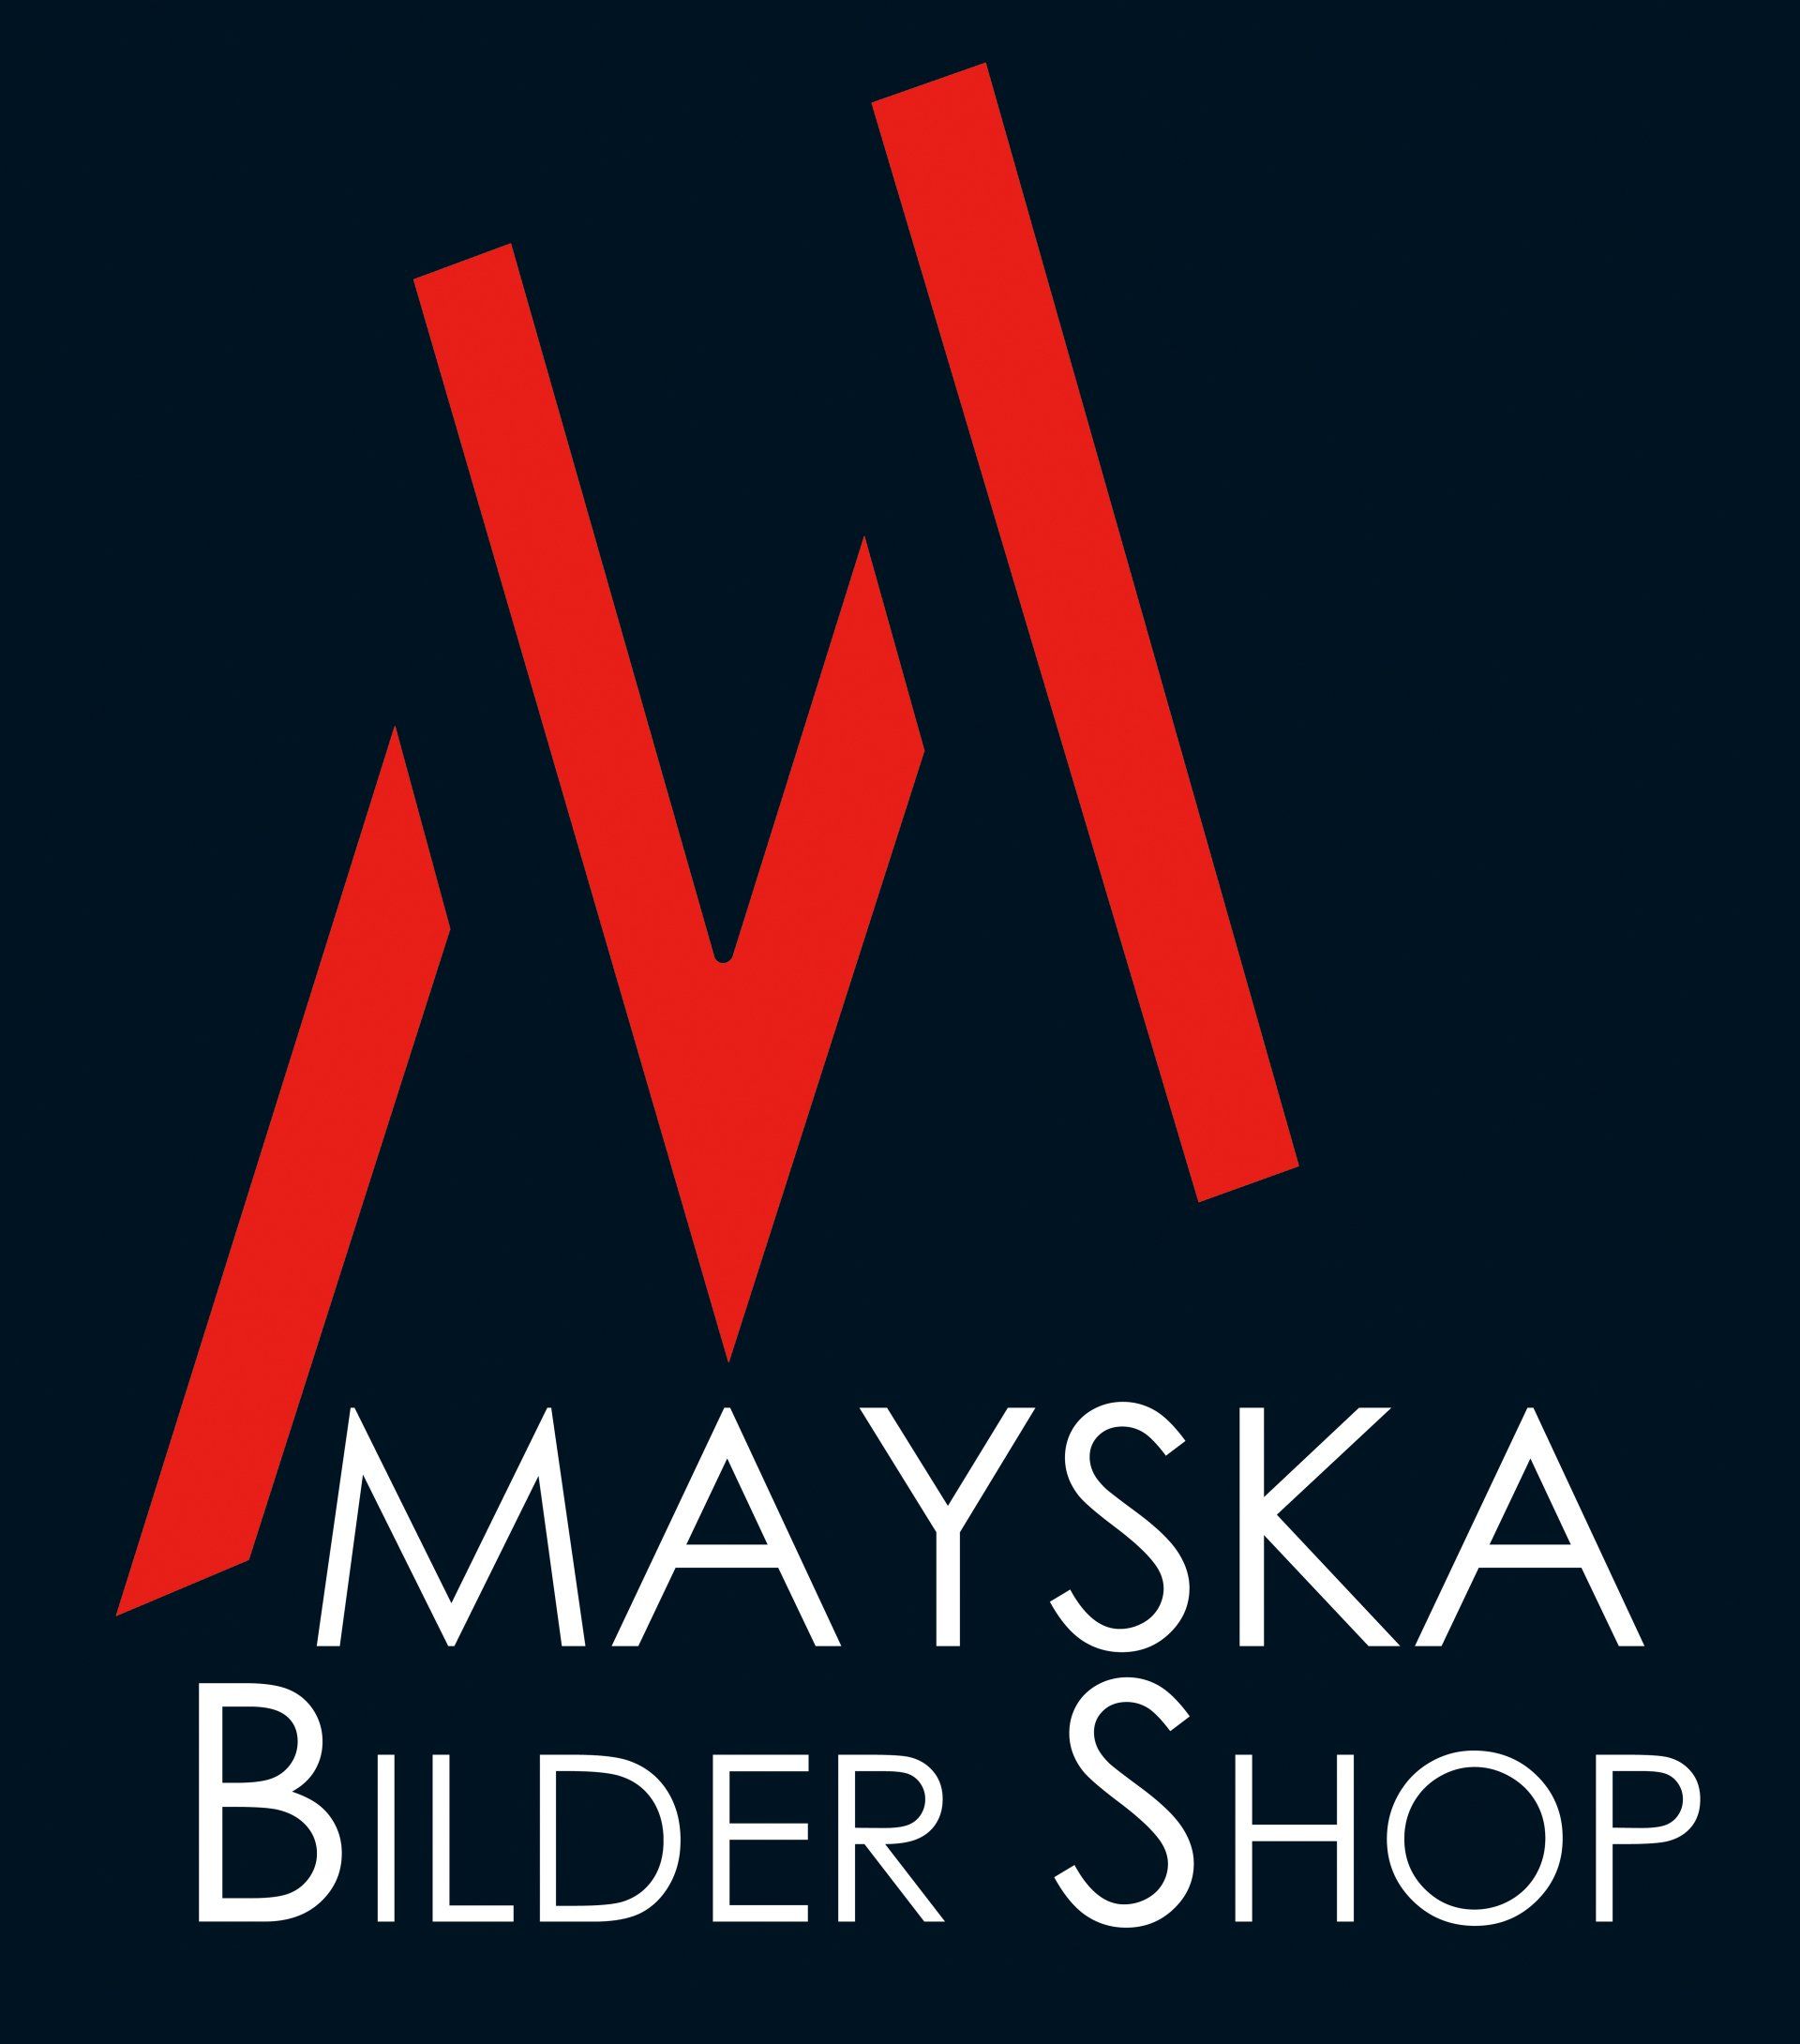 (c) Mayska.shop